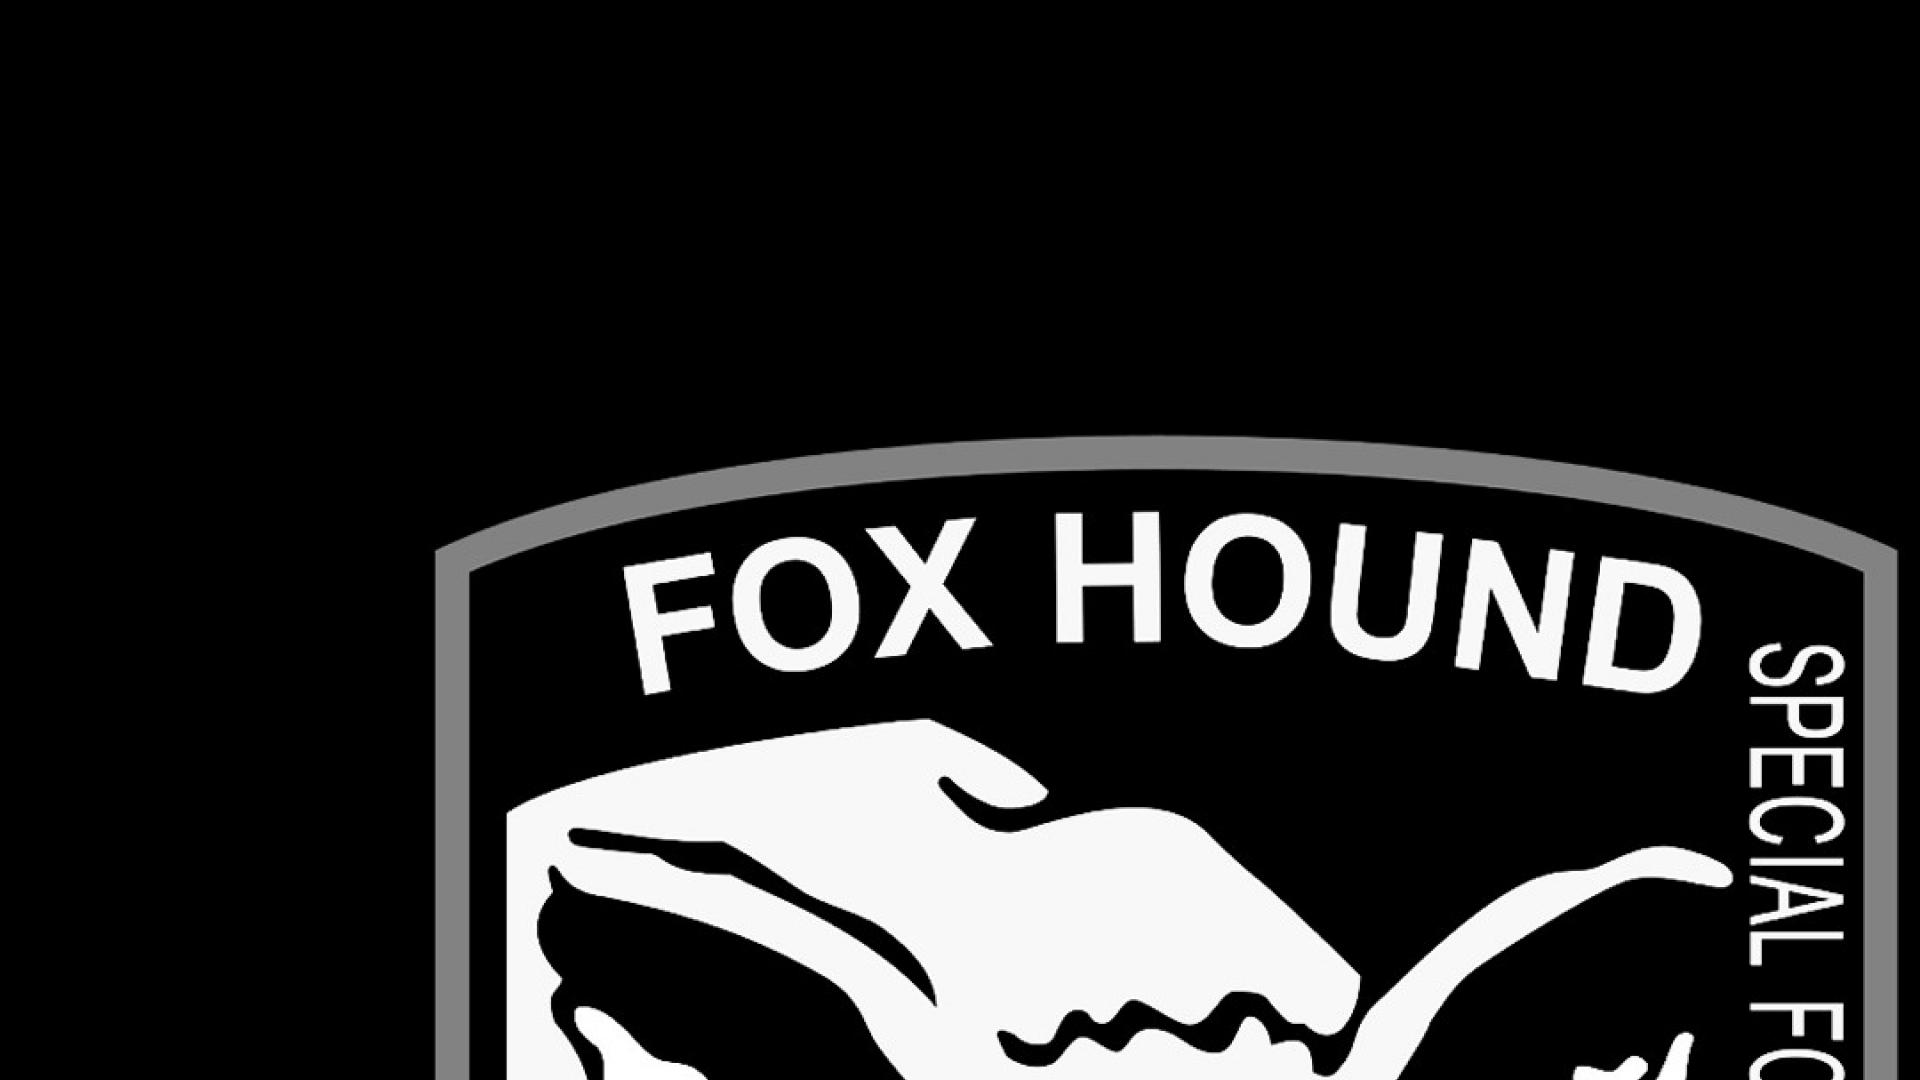 Fox hound. Foxhound Metal Gear. Foxhound Metal Gear обои. Foxhound MGS Wallpaper. Аватарка Foxhound MGS.